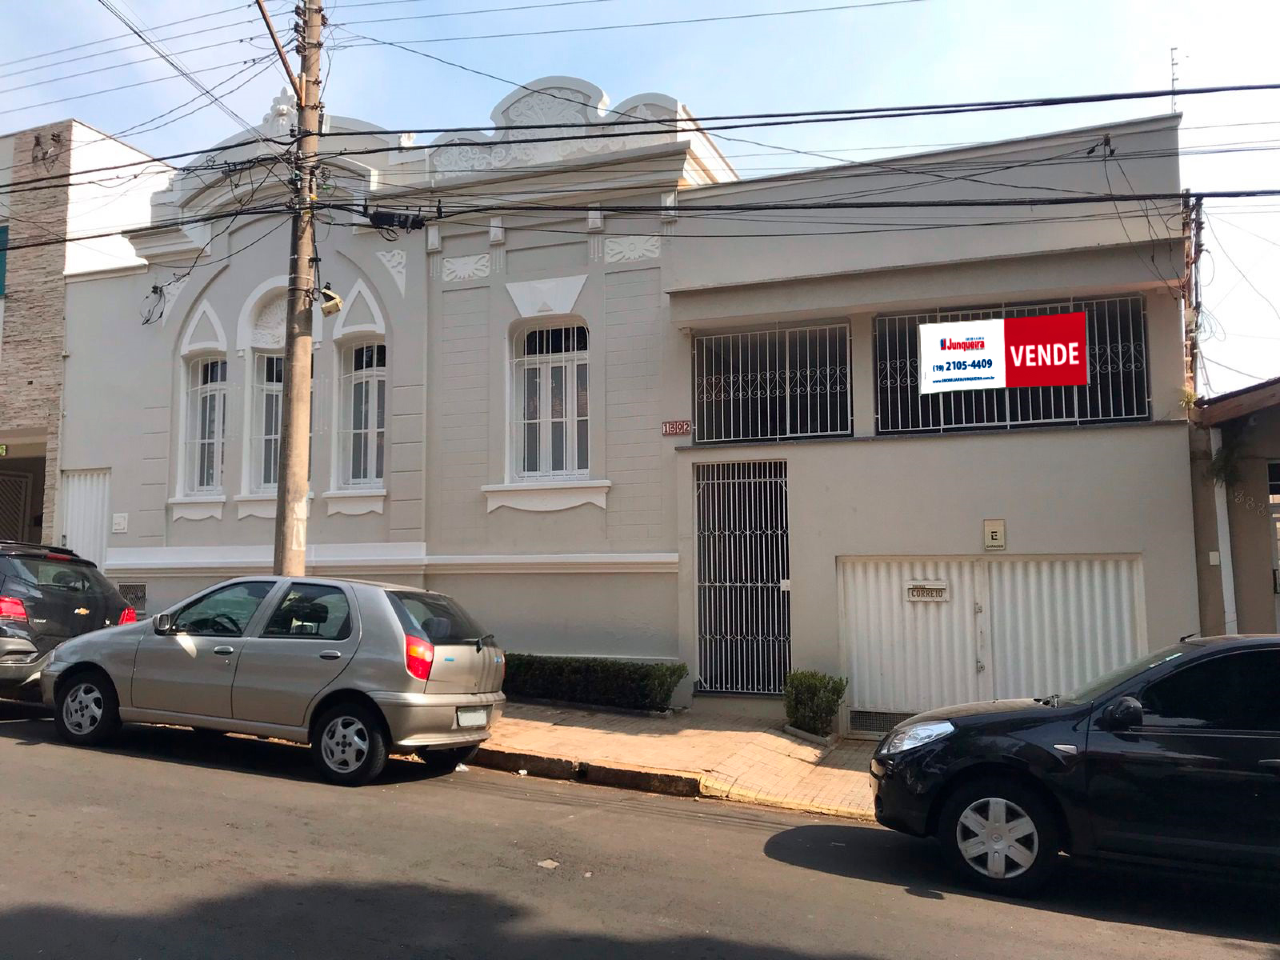 Casa para comprar, 3 quartos, 1 suíte, no bairro Cidade Alta em Piracicaba - SP